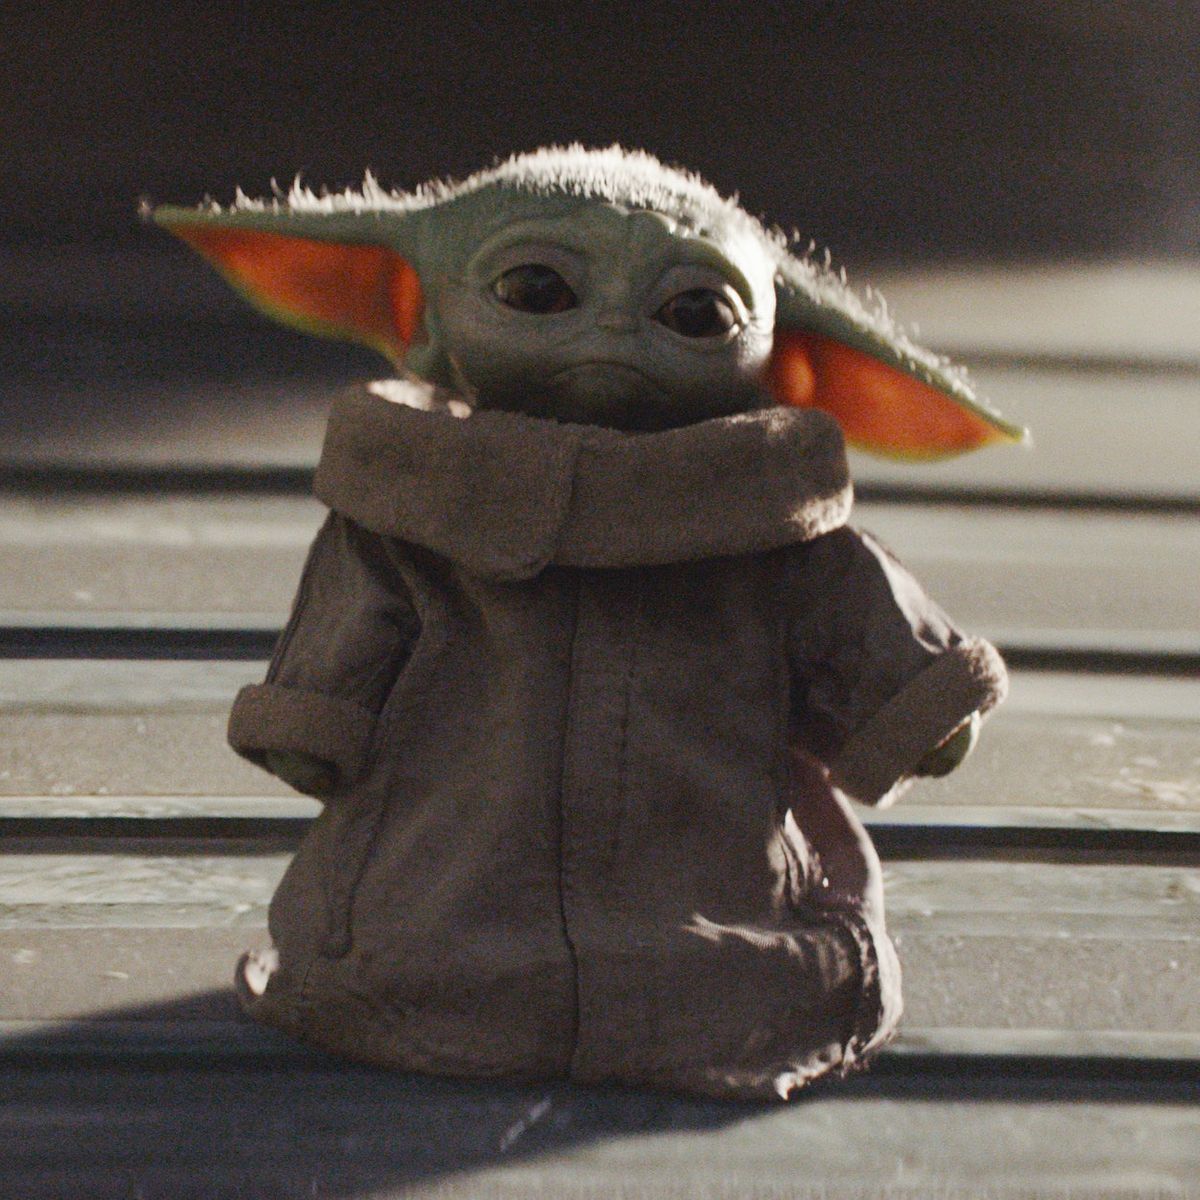 Disney to Sell Baby Yoda Face Masks Amid Coronavirus